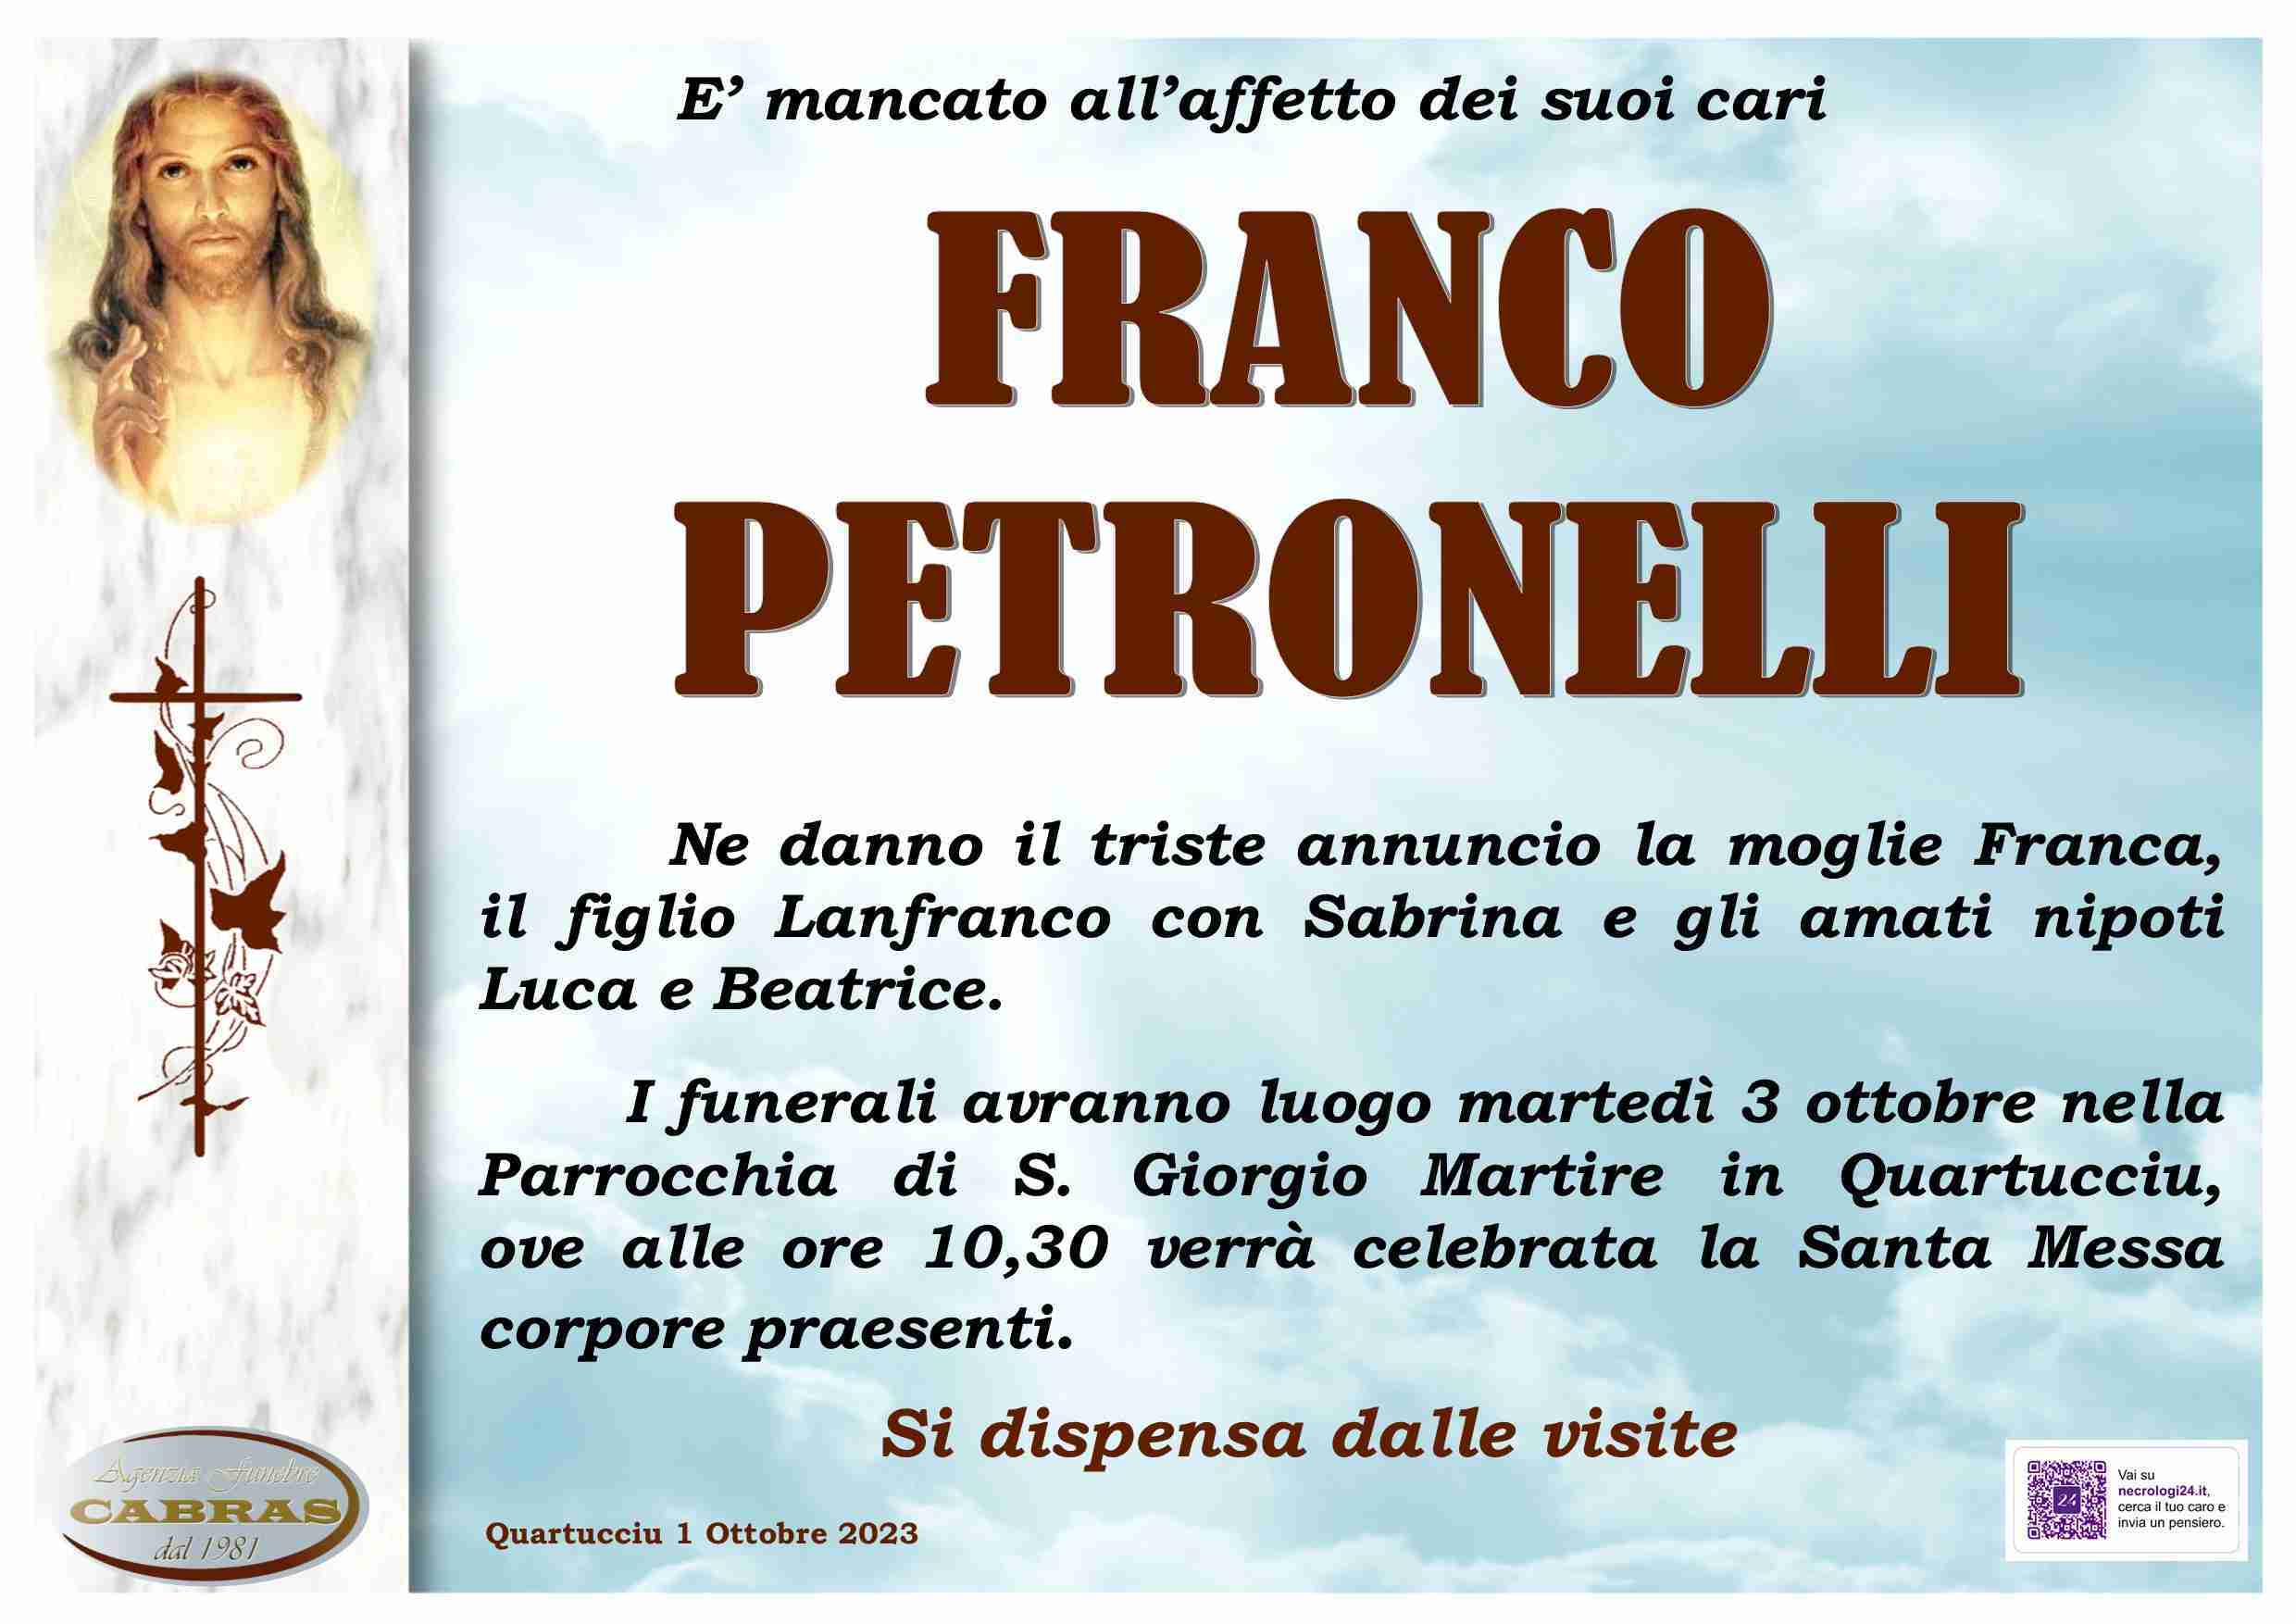 Franco Petronelli